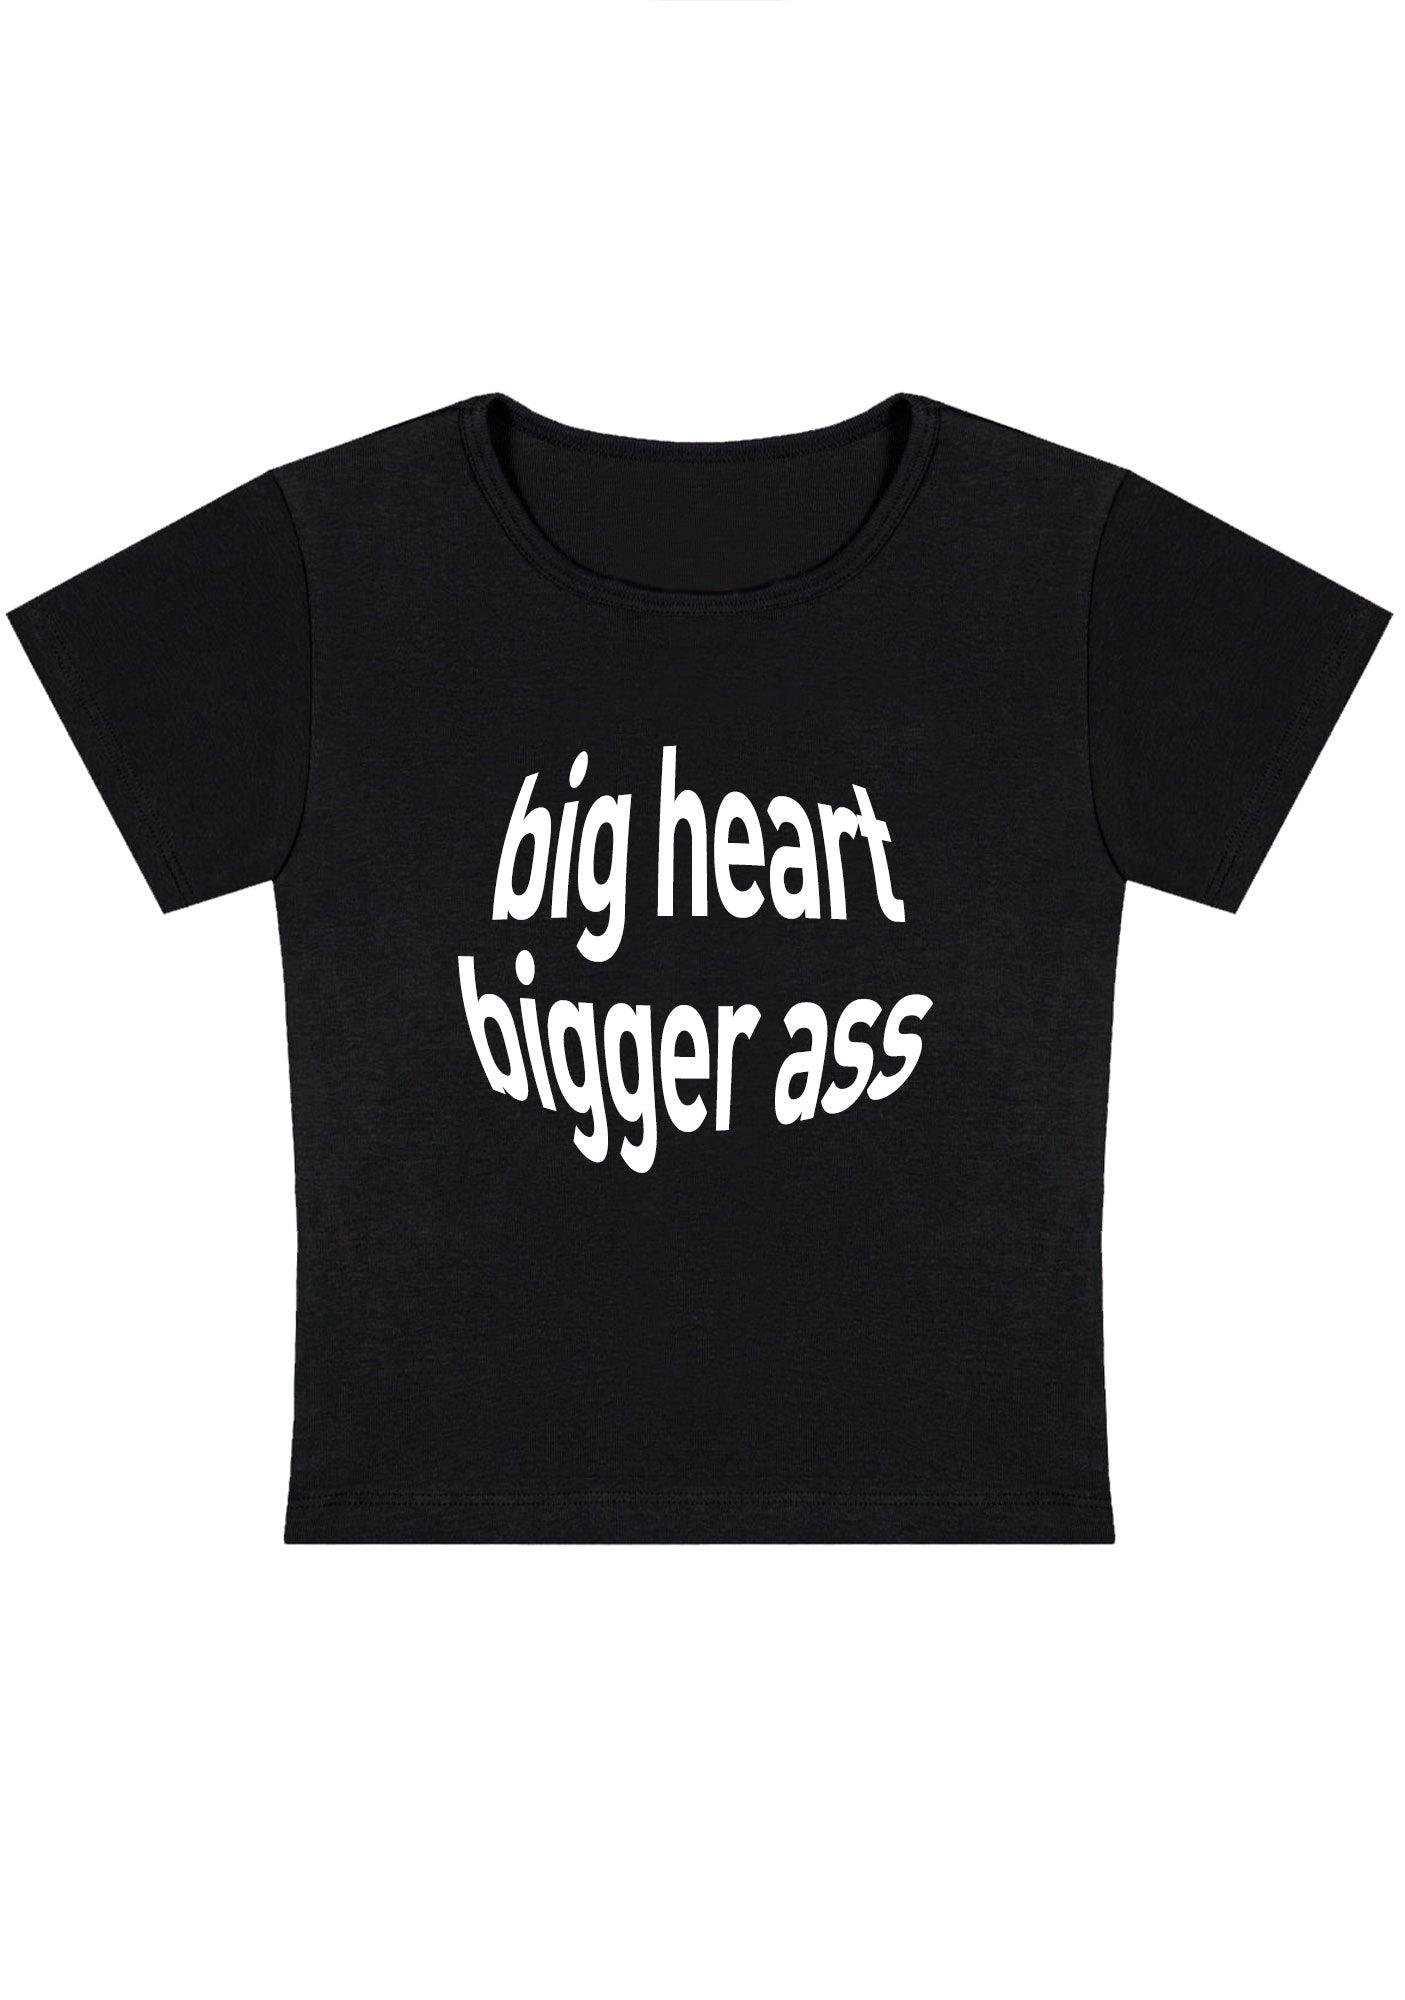 Big Heart Bigger Y2K Baby Tee